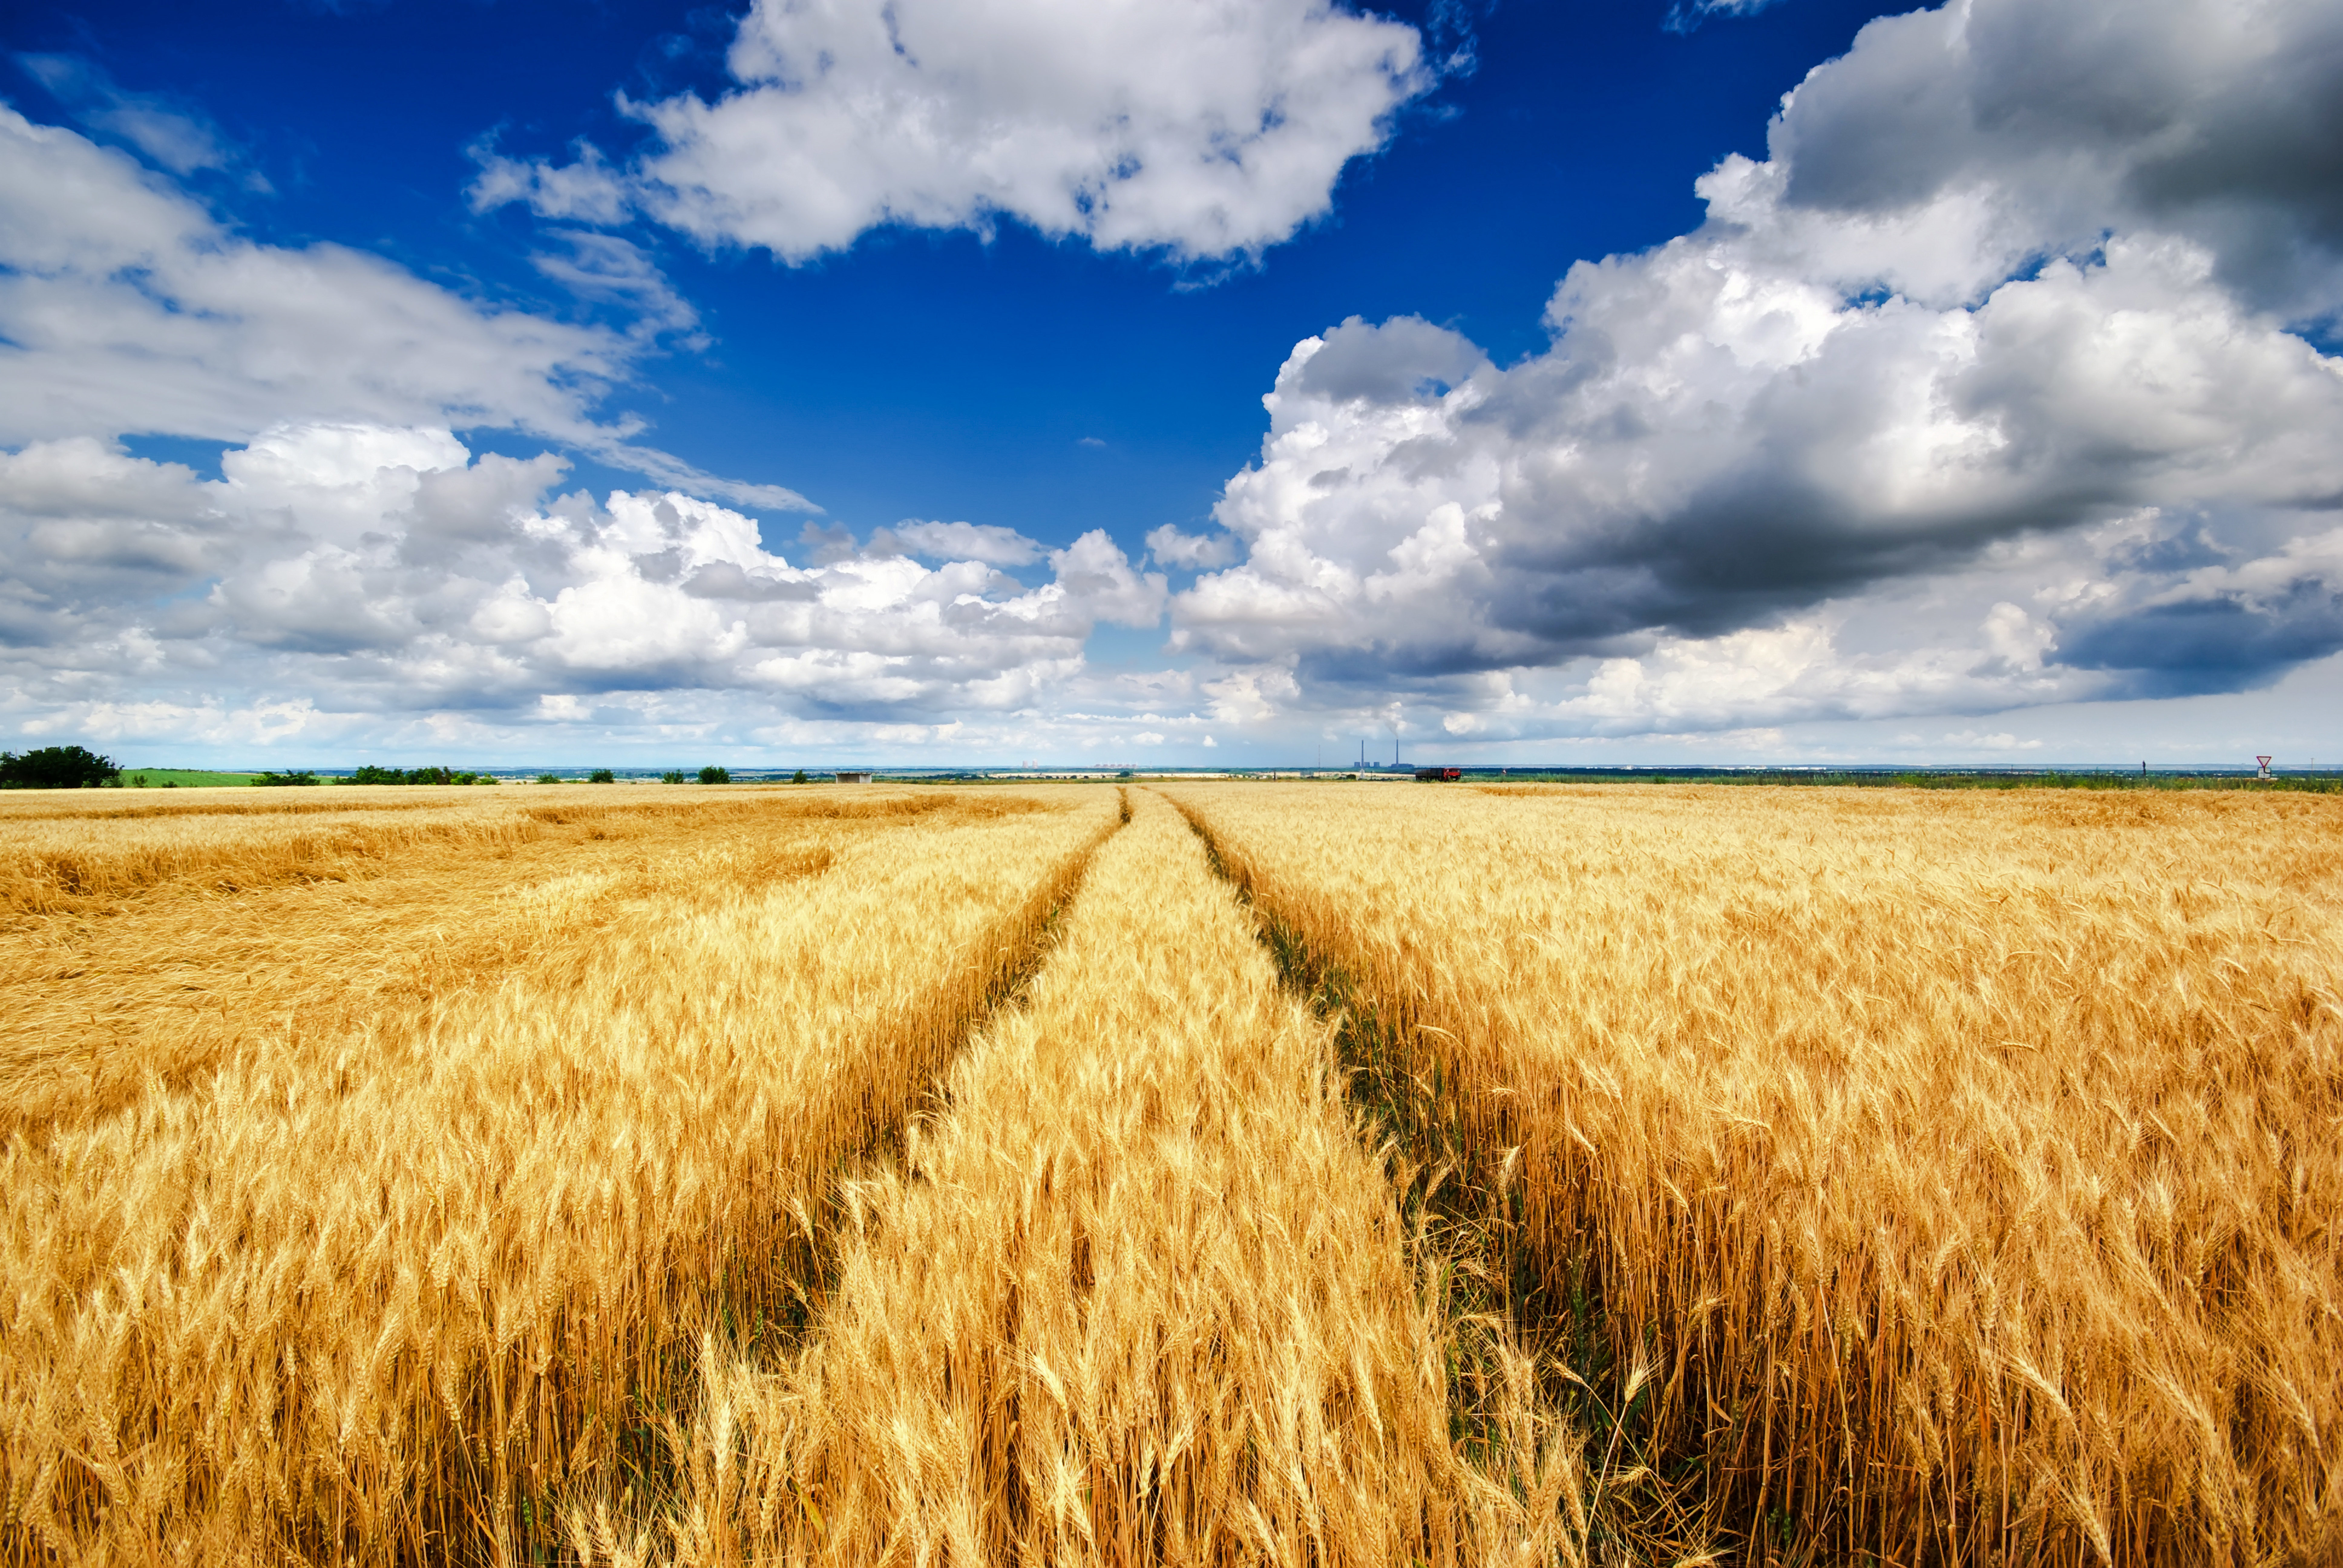 Риче поле. Пшеничное поле Вангол. Рожь пшеница в поле России. Поля Орловская область пшеница.